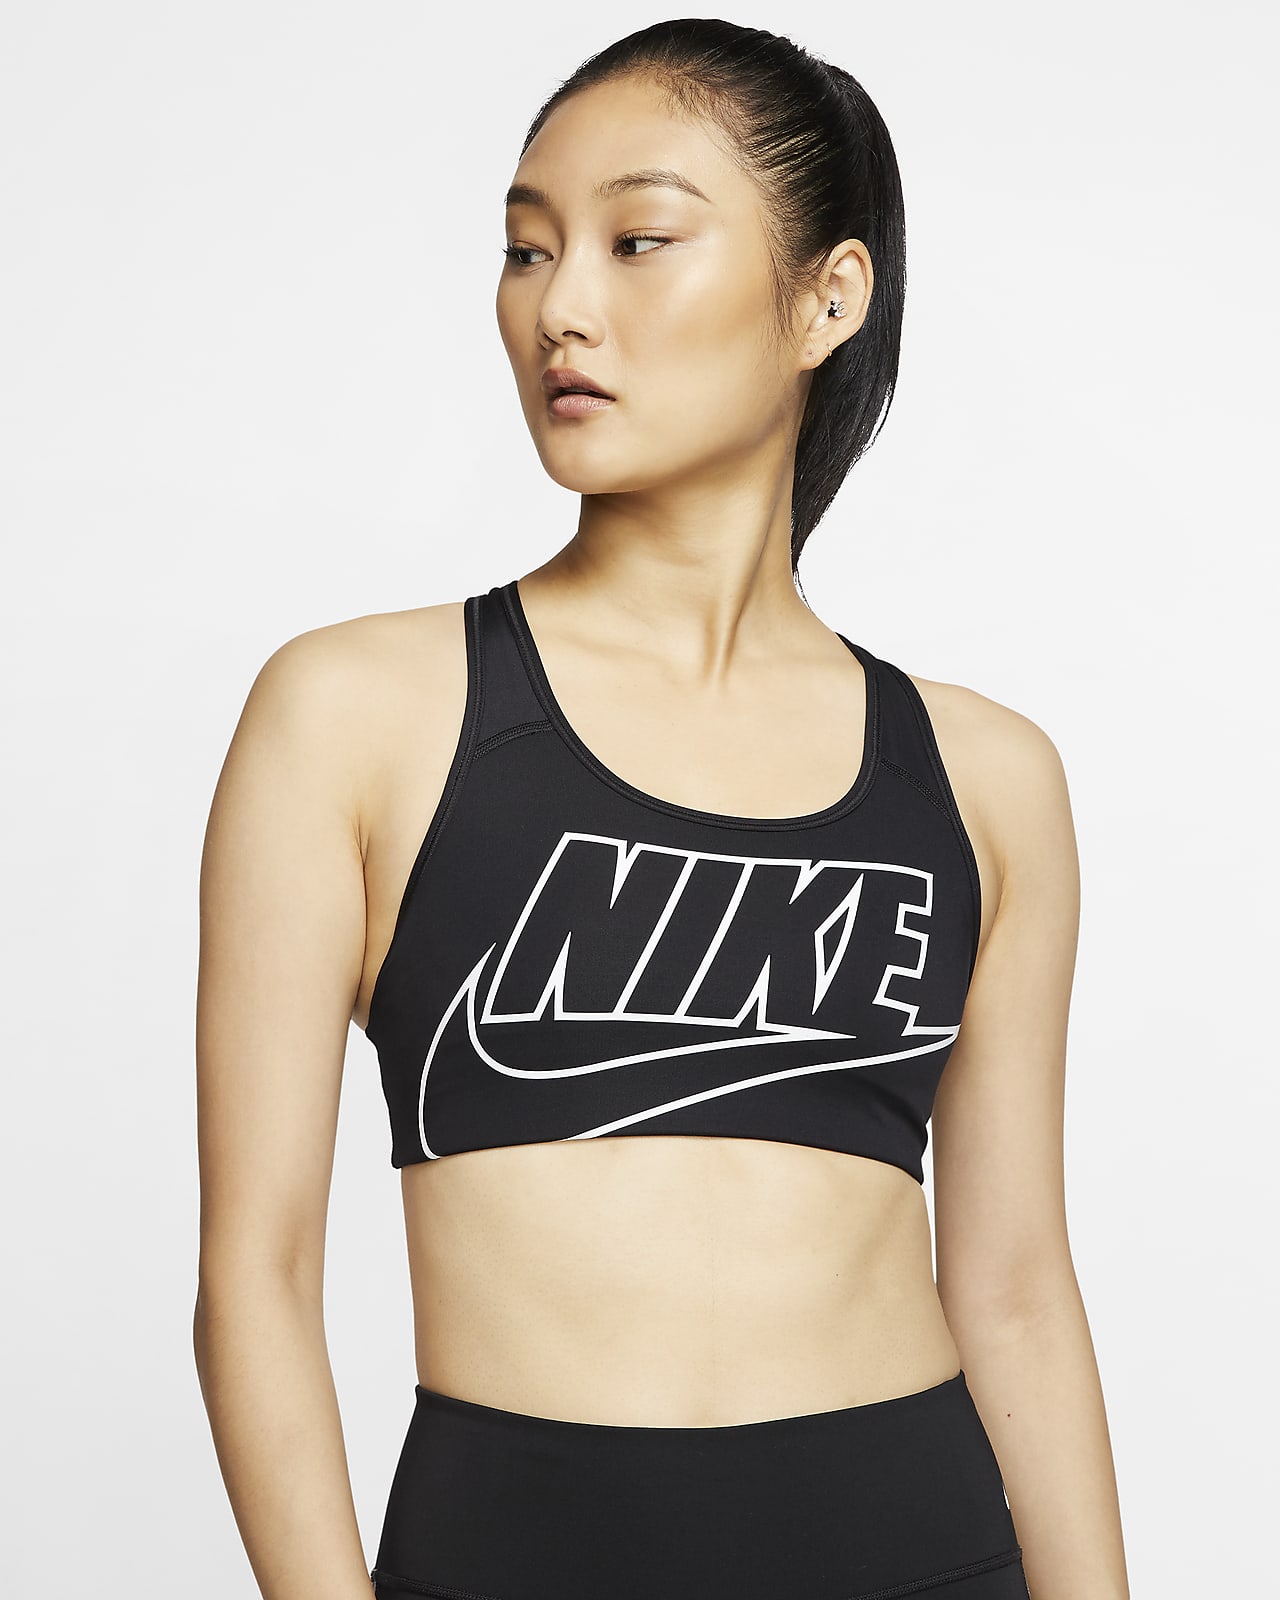 Enkelhed George Eliot eksplodere Nike Swoosh-sports-bh med medium støtte og indlæg i et stykke til kvinder.  Nike DK